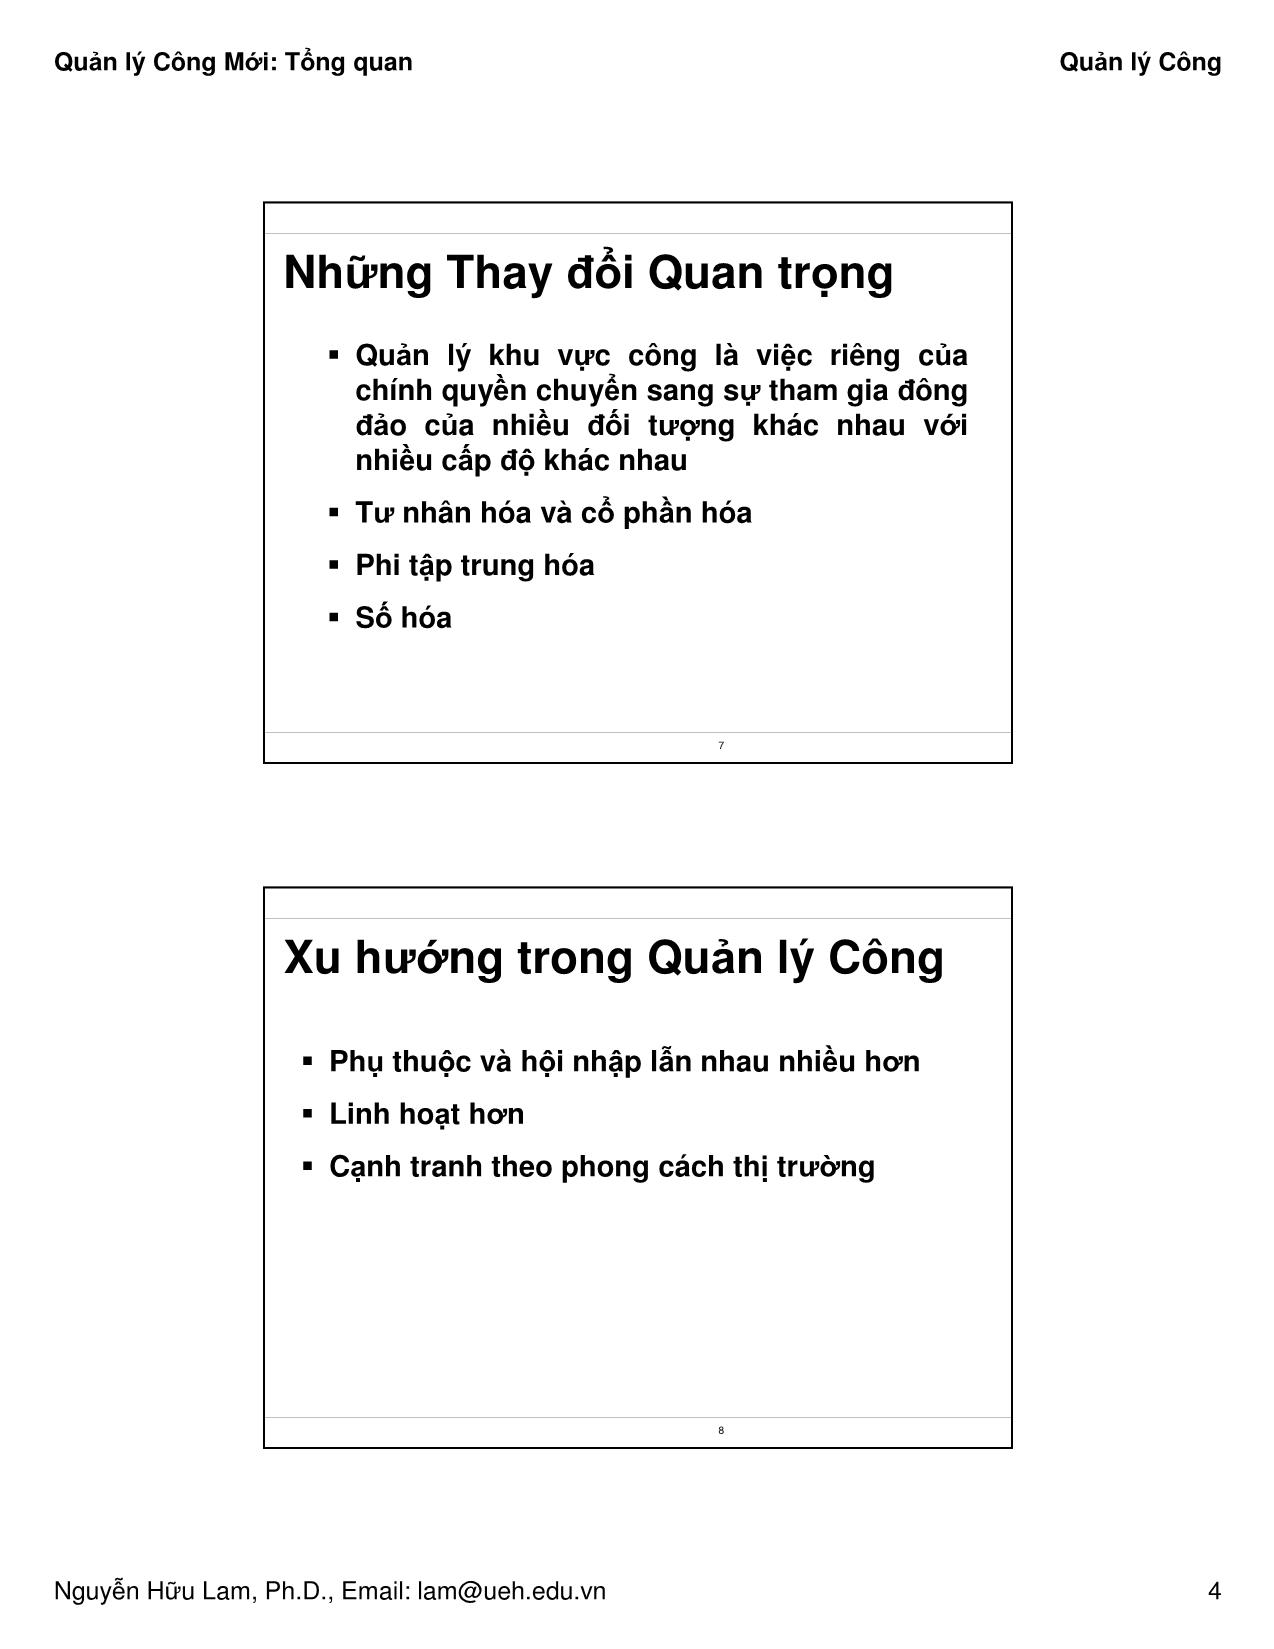 Bài giảng Quản lý công - Tổng quan - Nguyễn Hữu Lam trang 4